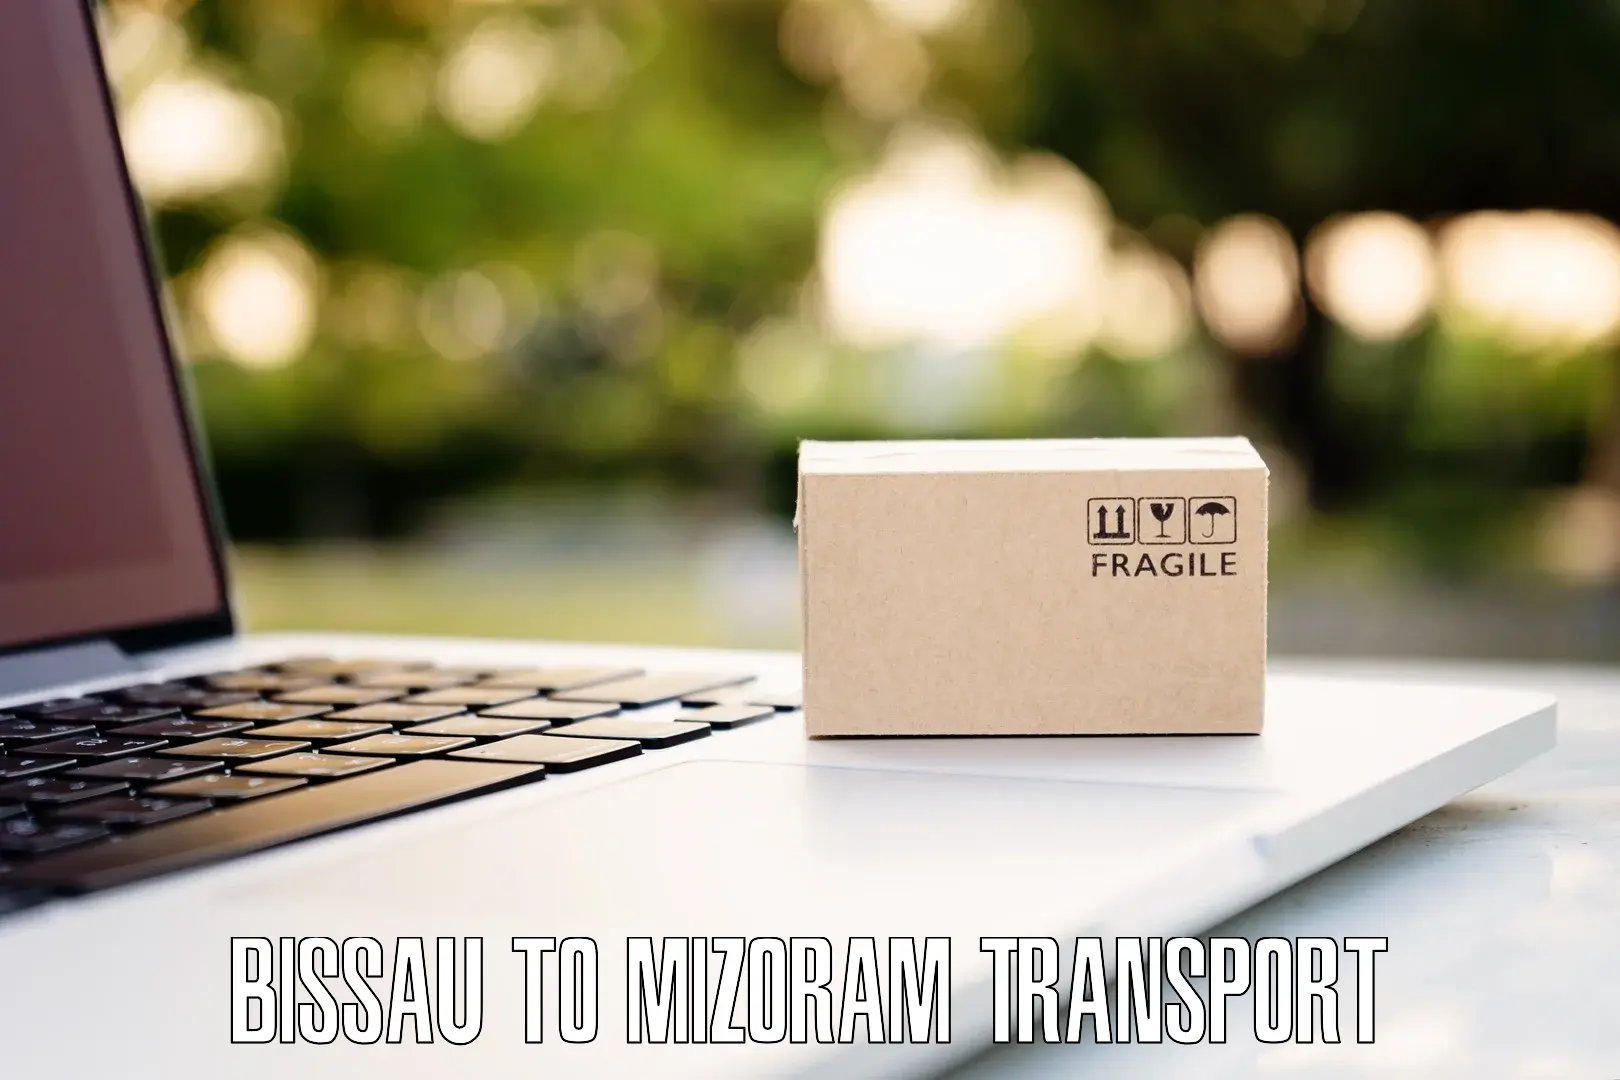 Road transport online services Bissau to Thenzawl